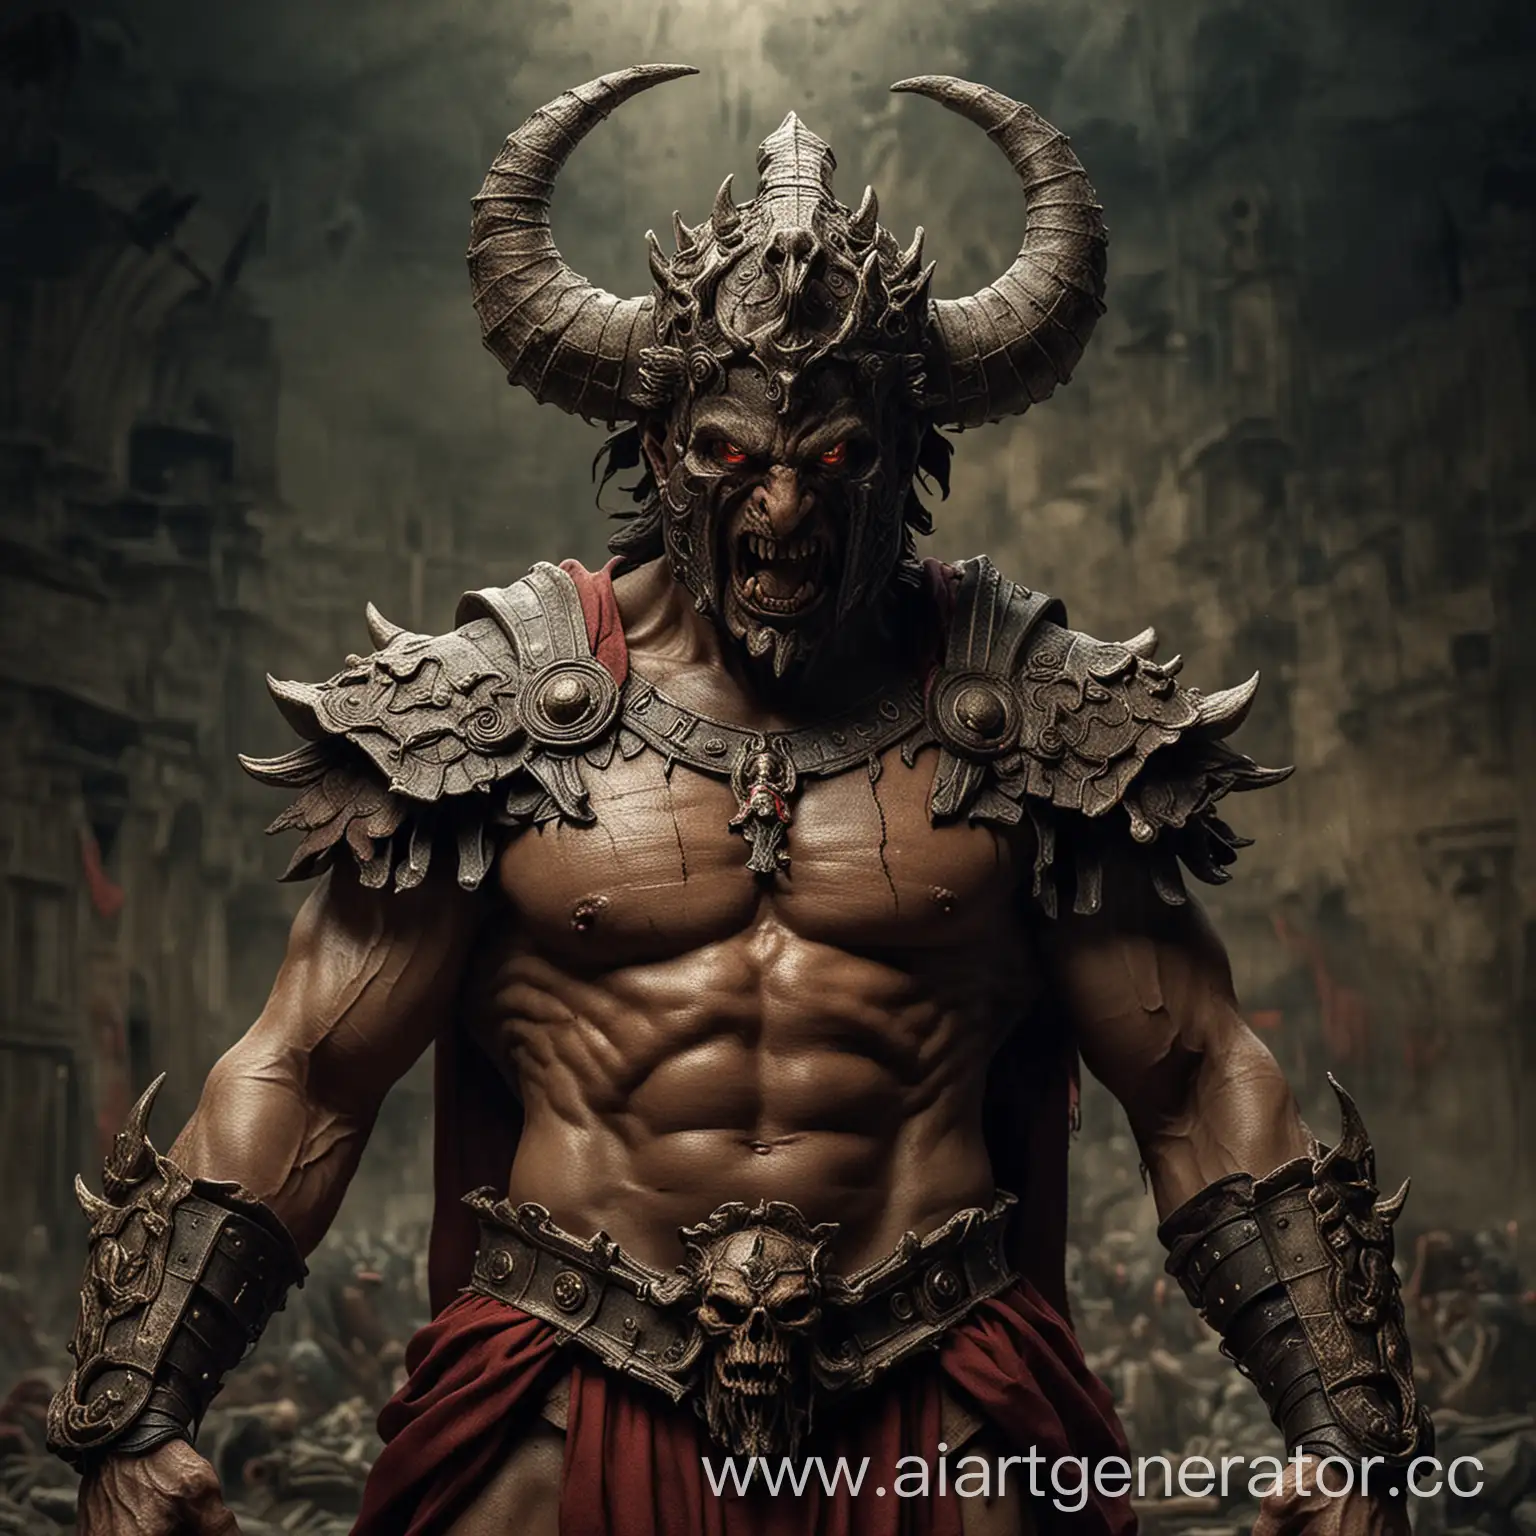 Ancient-Roman-Demon-Malevolent-Spirit-from-the-Empires-Depths